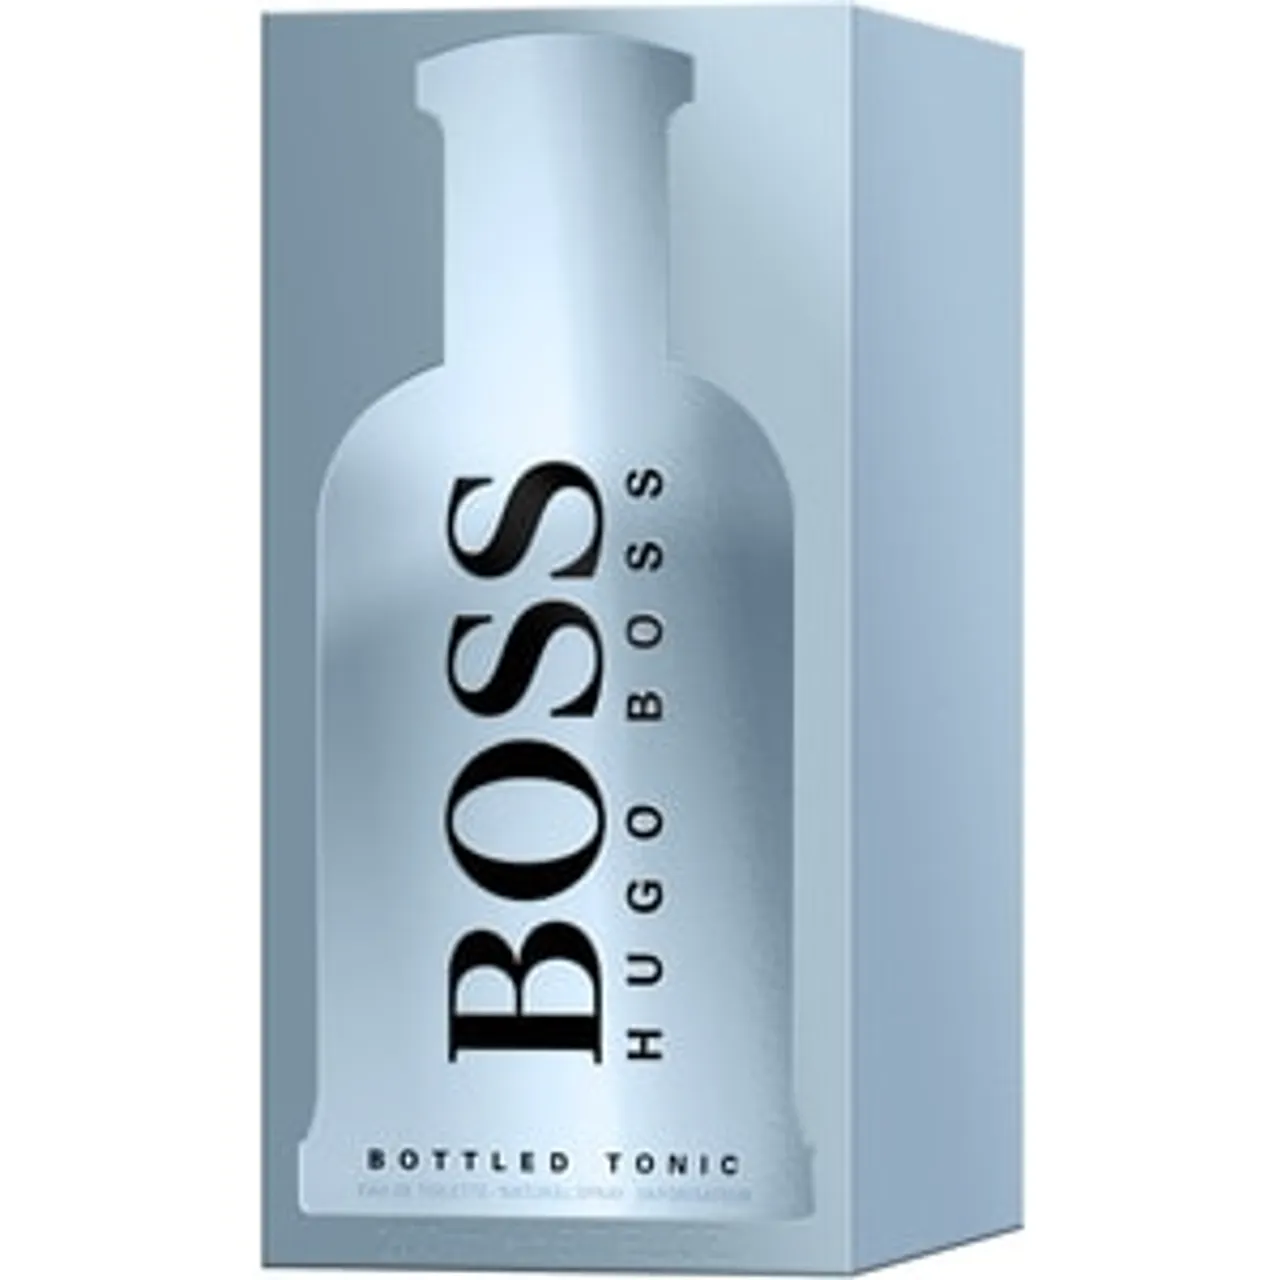 Hugo Boss Boss Bottled Tonic BOSS BOTTLED TONIC EAU DE TOILETTE 200 ML